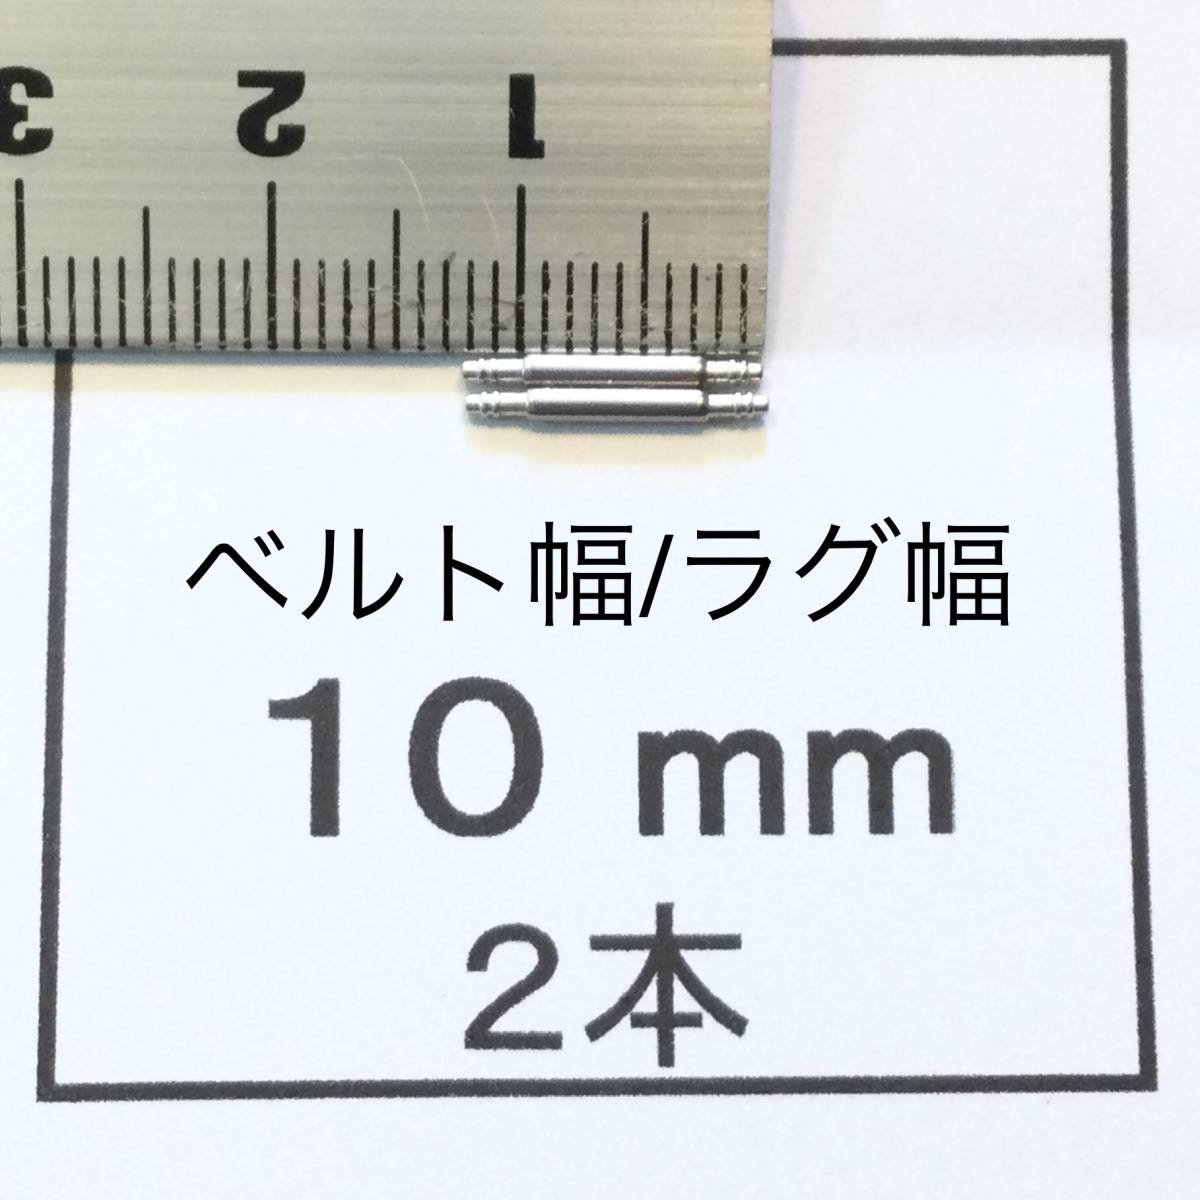  наручные часы spring палка spring палка 2 шт 10mm для 60 иен стоимость доставки 63 иен быстрое решение немедленная отправка изображение 3 листов y